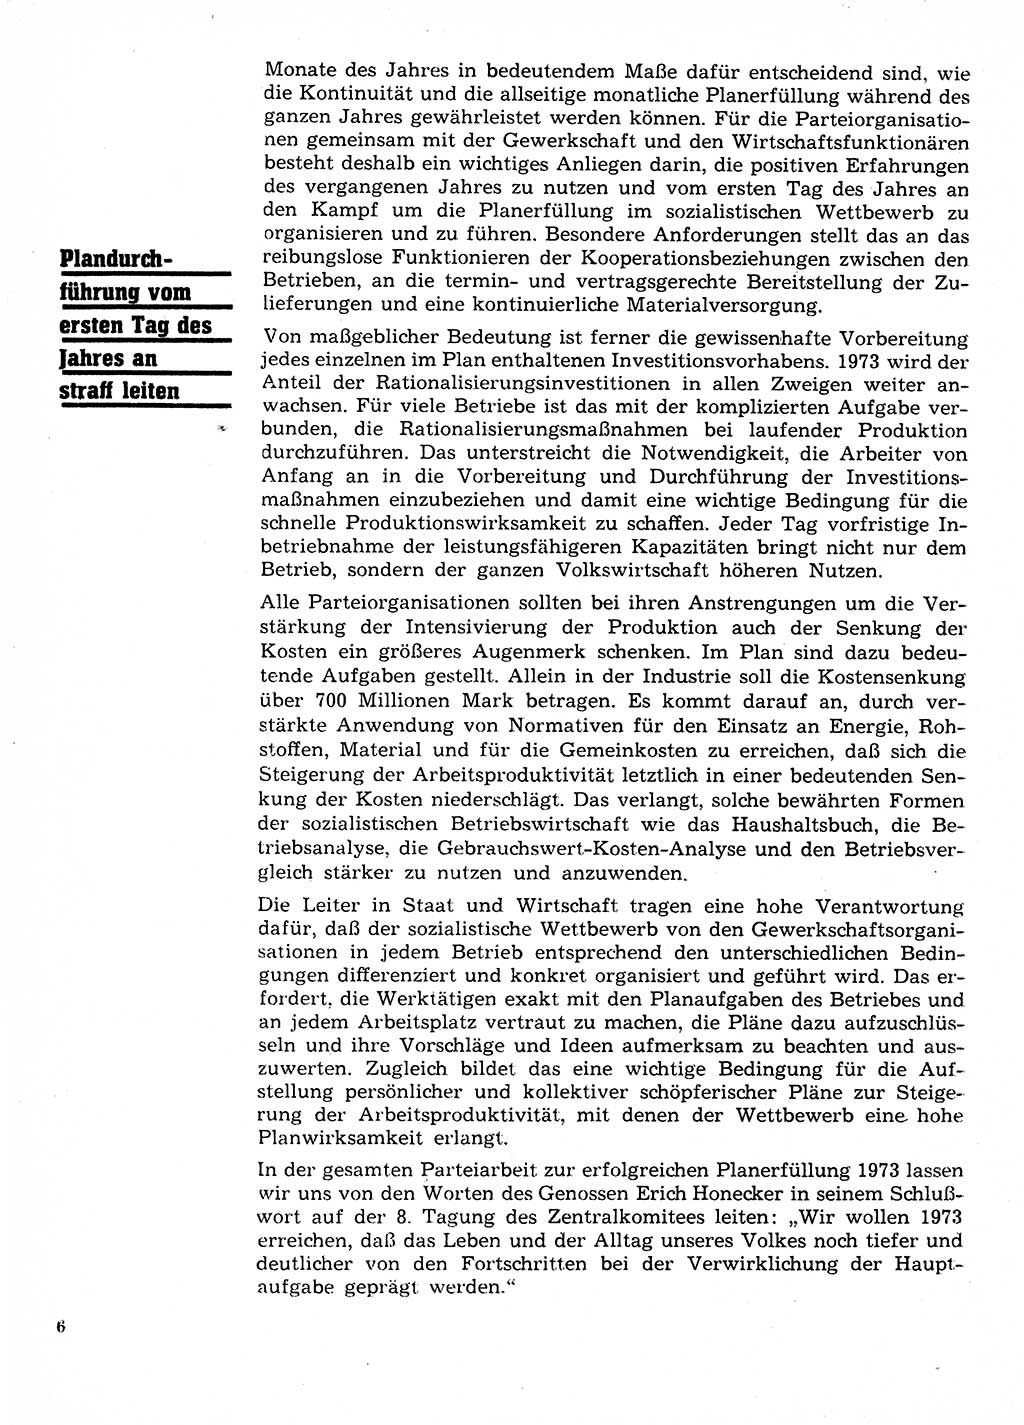 Neuer Weg (NW), Organ des Zentralkomitees (ZK) der SED (Sozialistische Einheitspartei Deutschlands) für Fragen des Parteilebens, 28. Jahrgang [Deutsche Demokratische Republik (DDR)] 1973, Seite 6 (NW ZK SED DDR 1973, S. 6)